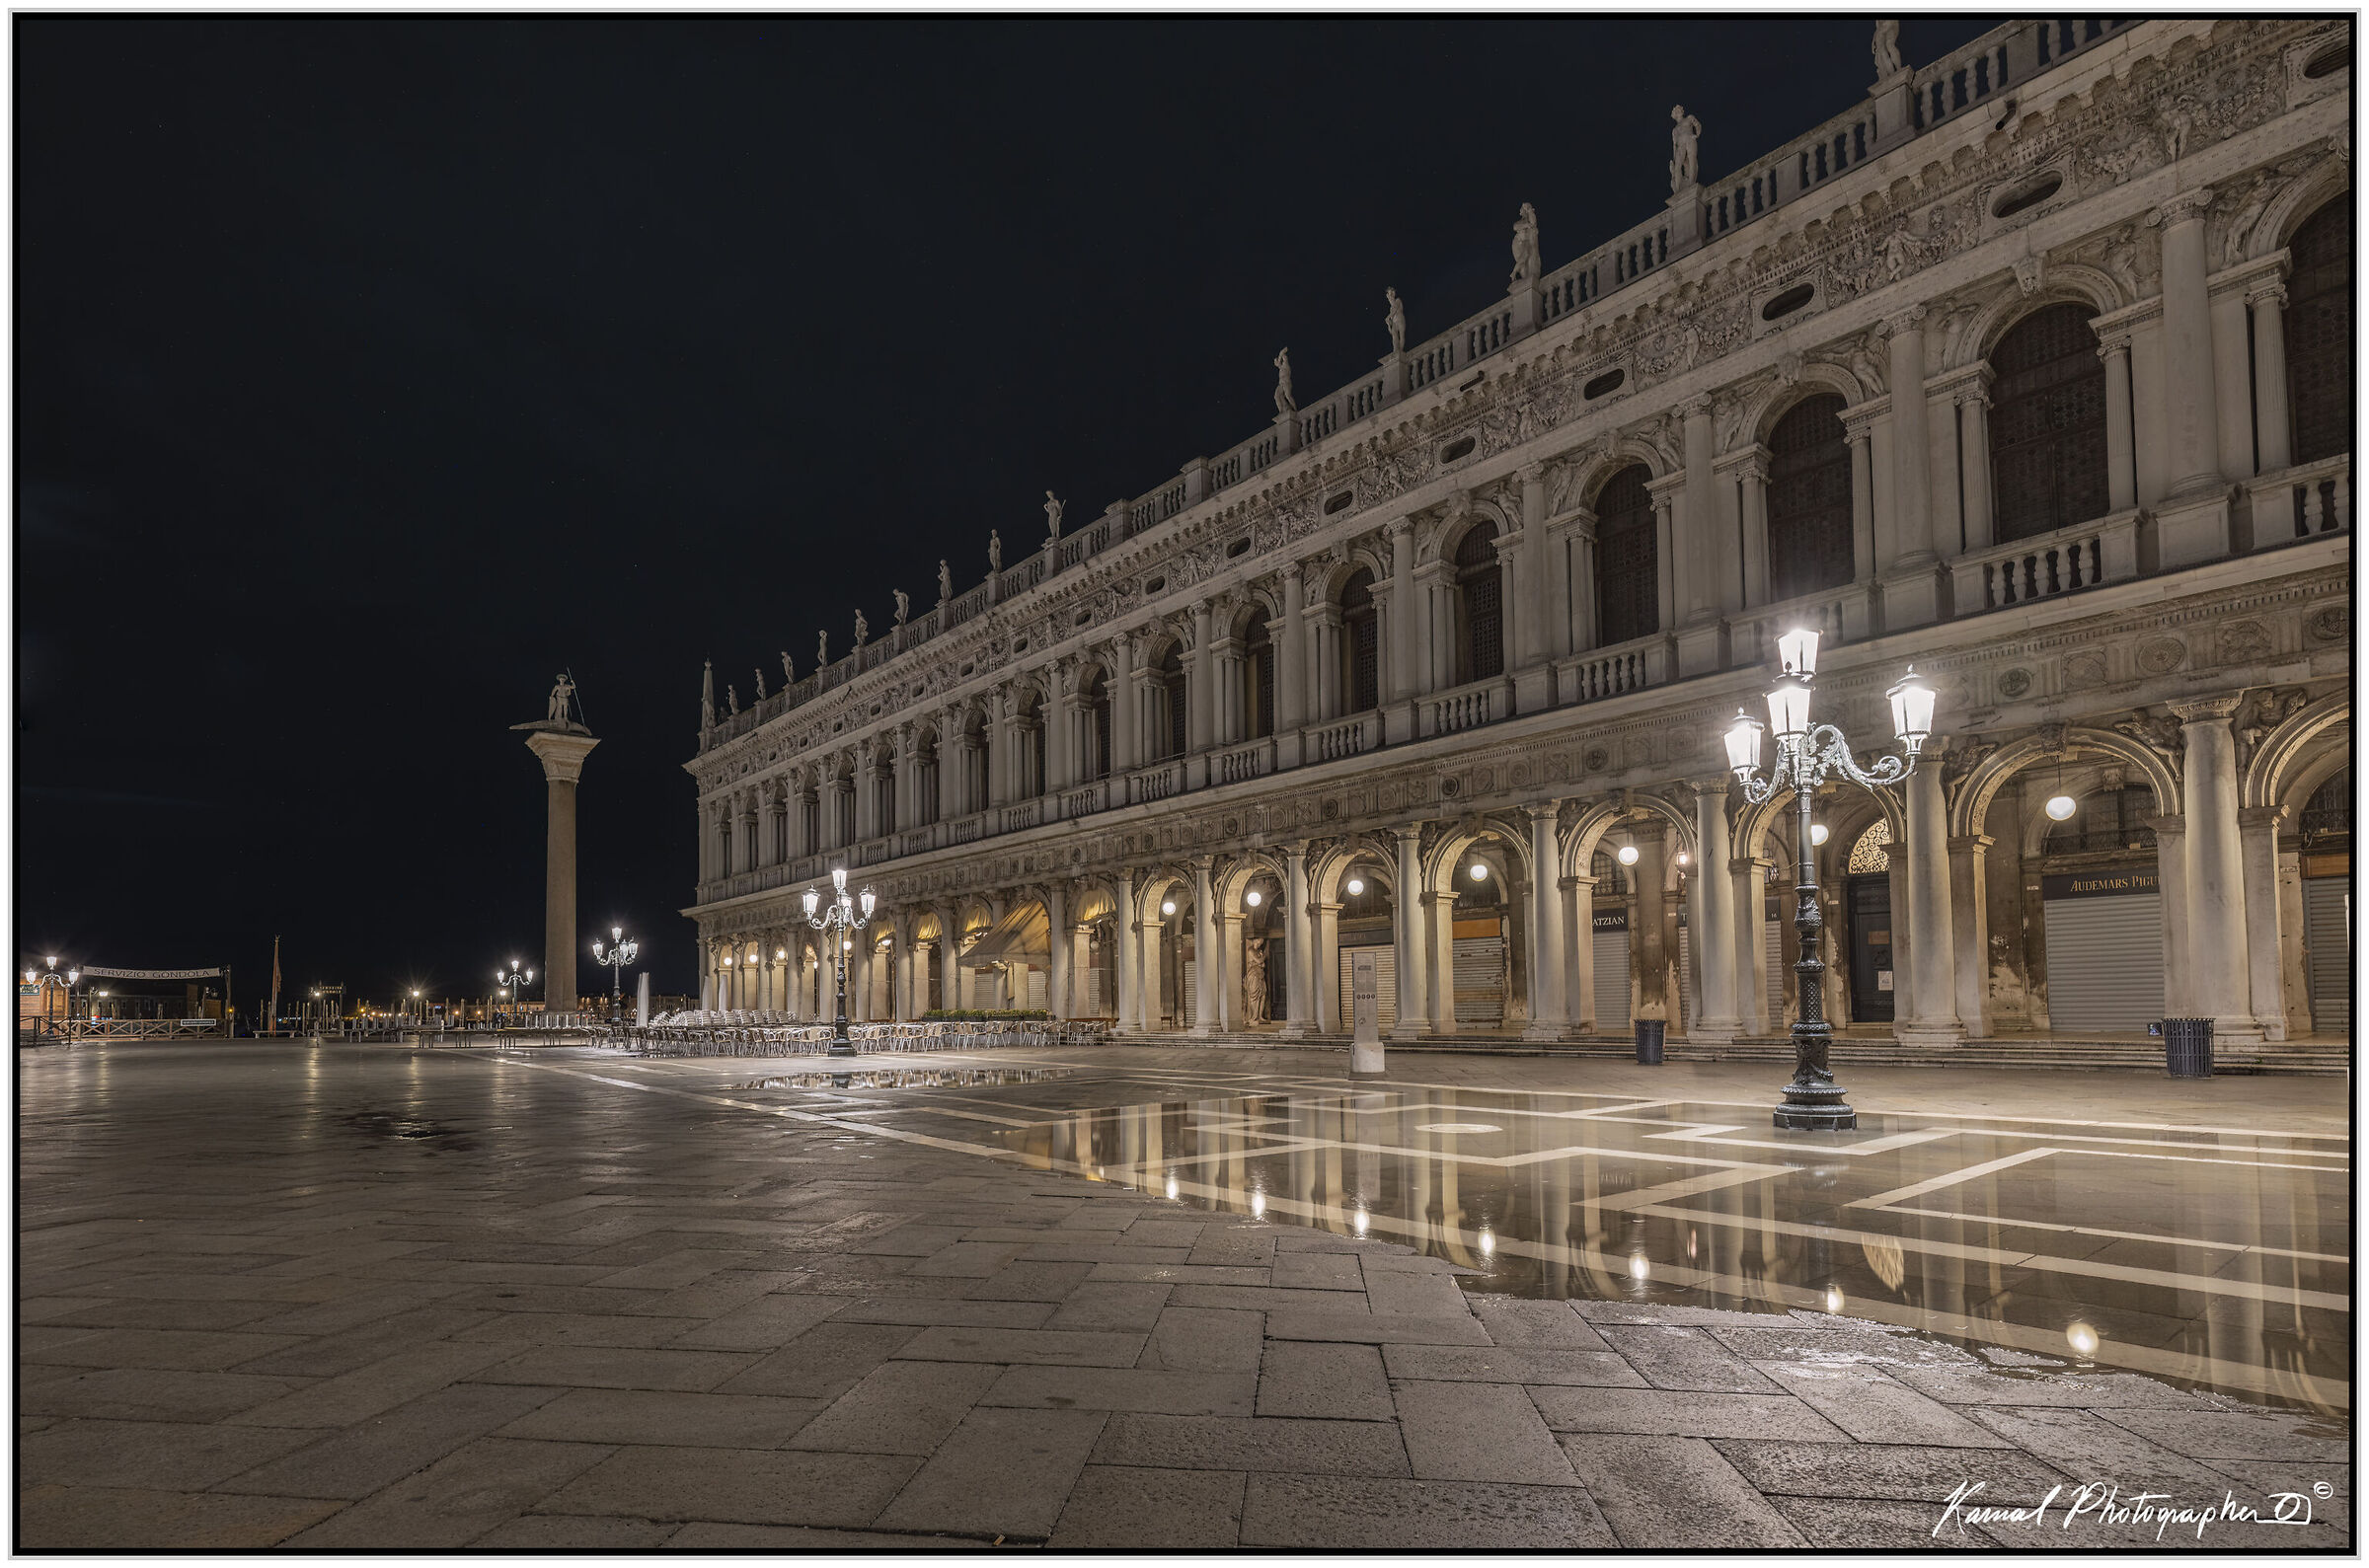 St. Mark's Square, Venice...